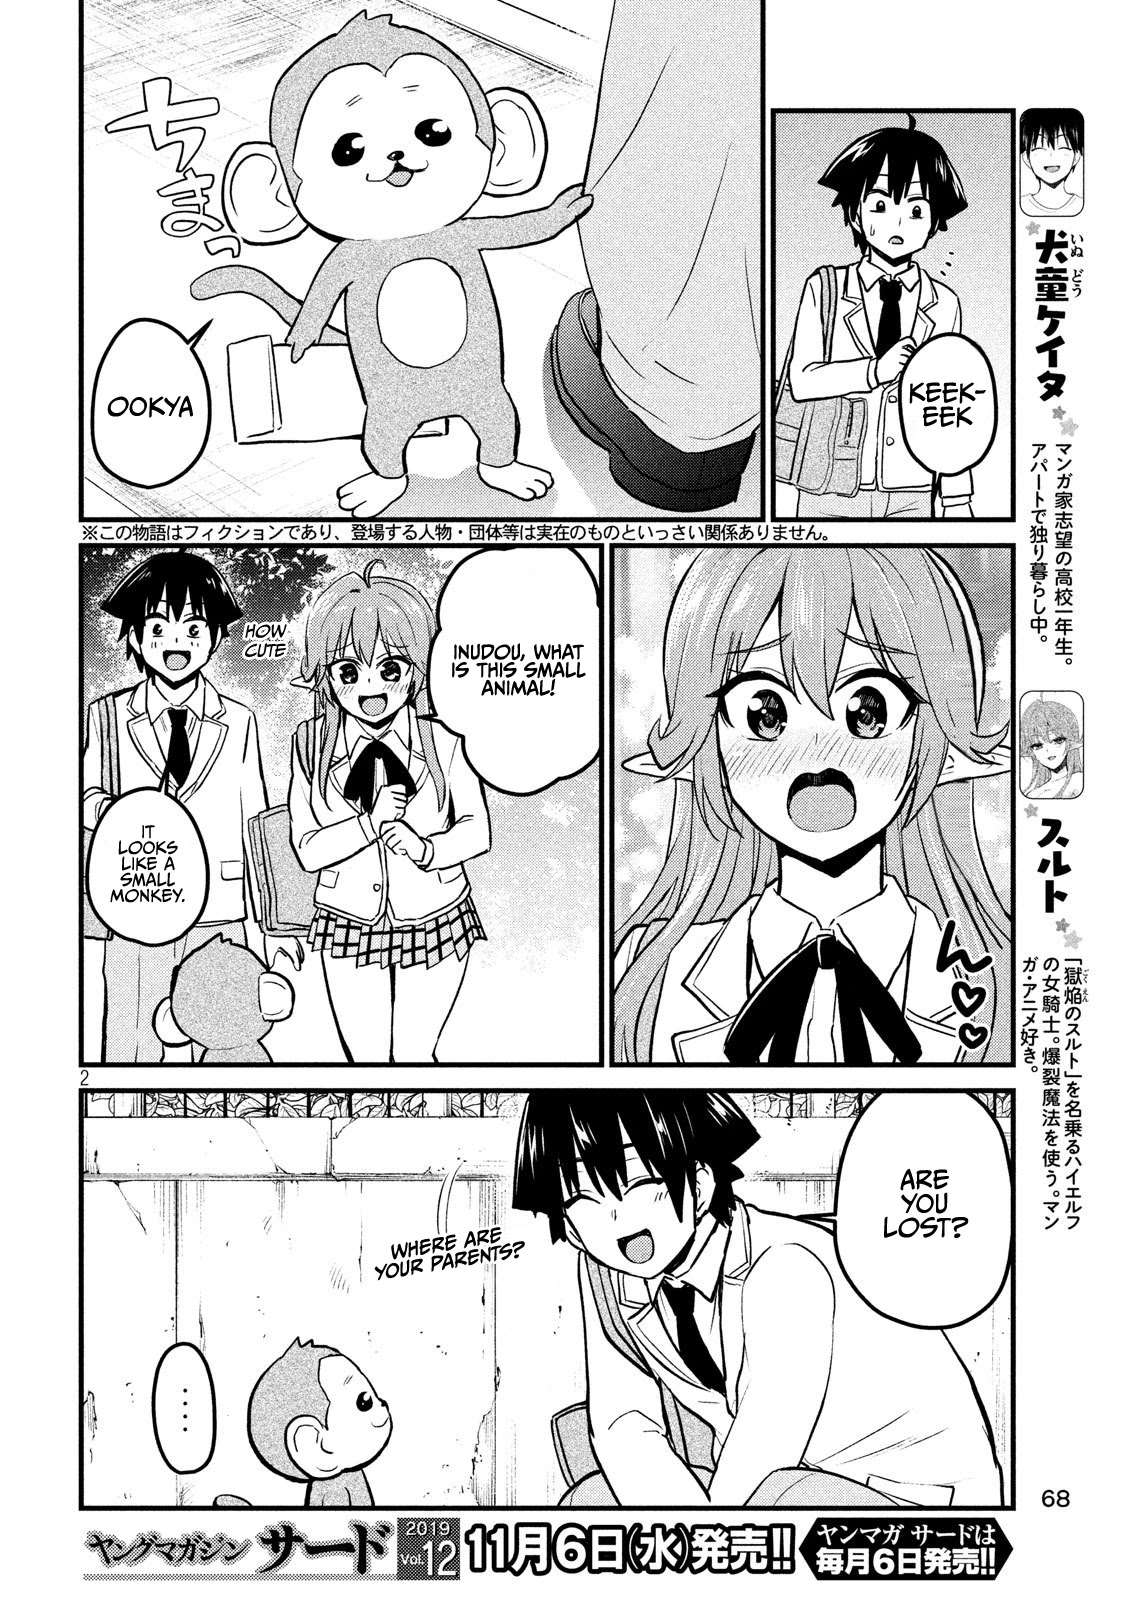 Otaku no Tonari wa ERUFU Desuka? - Chapter 9 Page 2